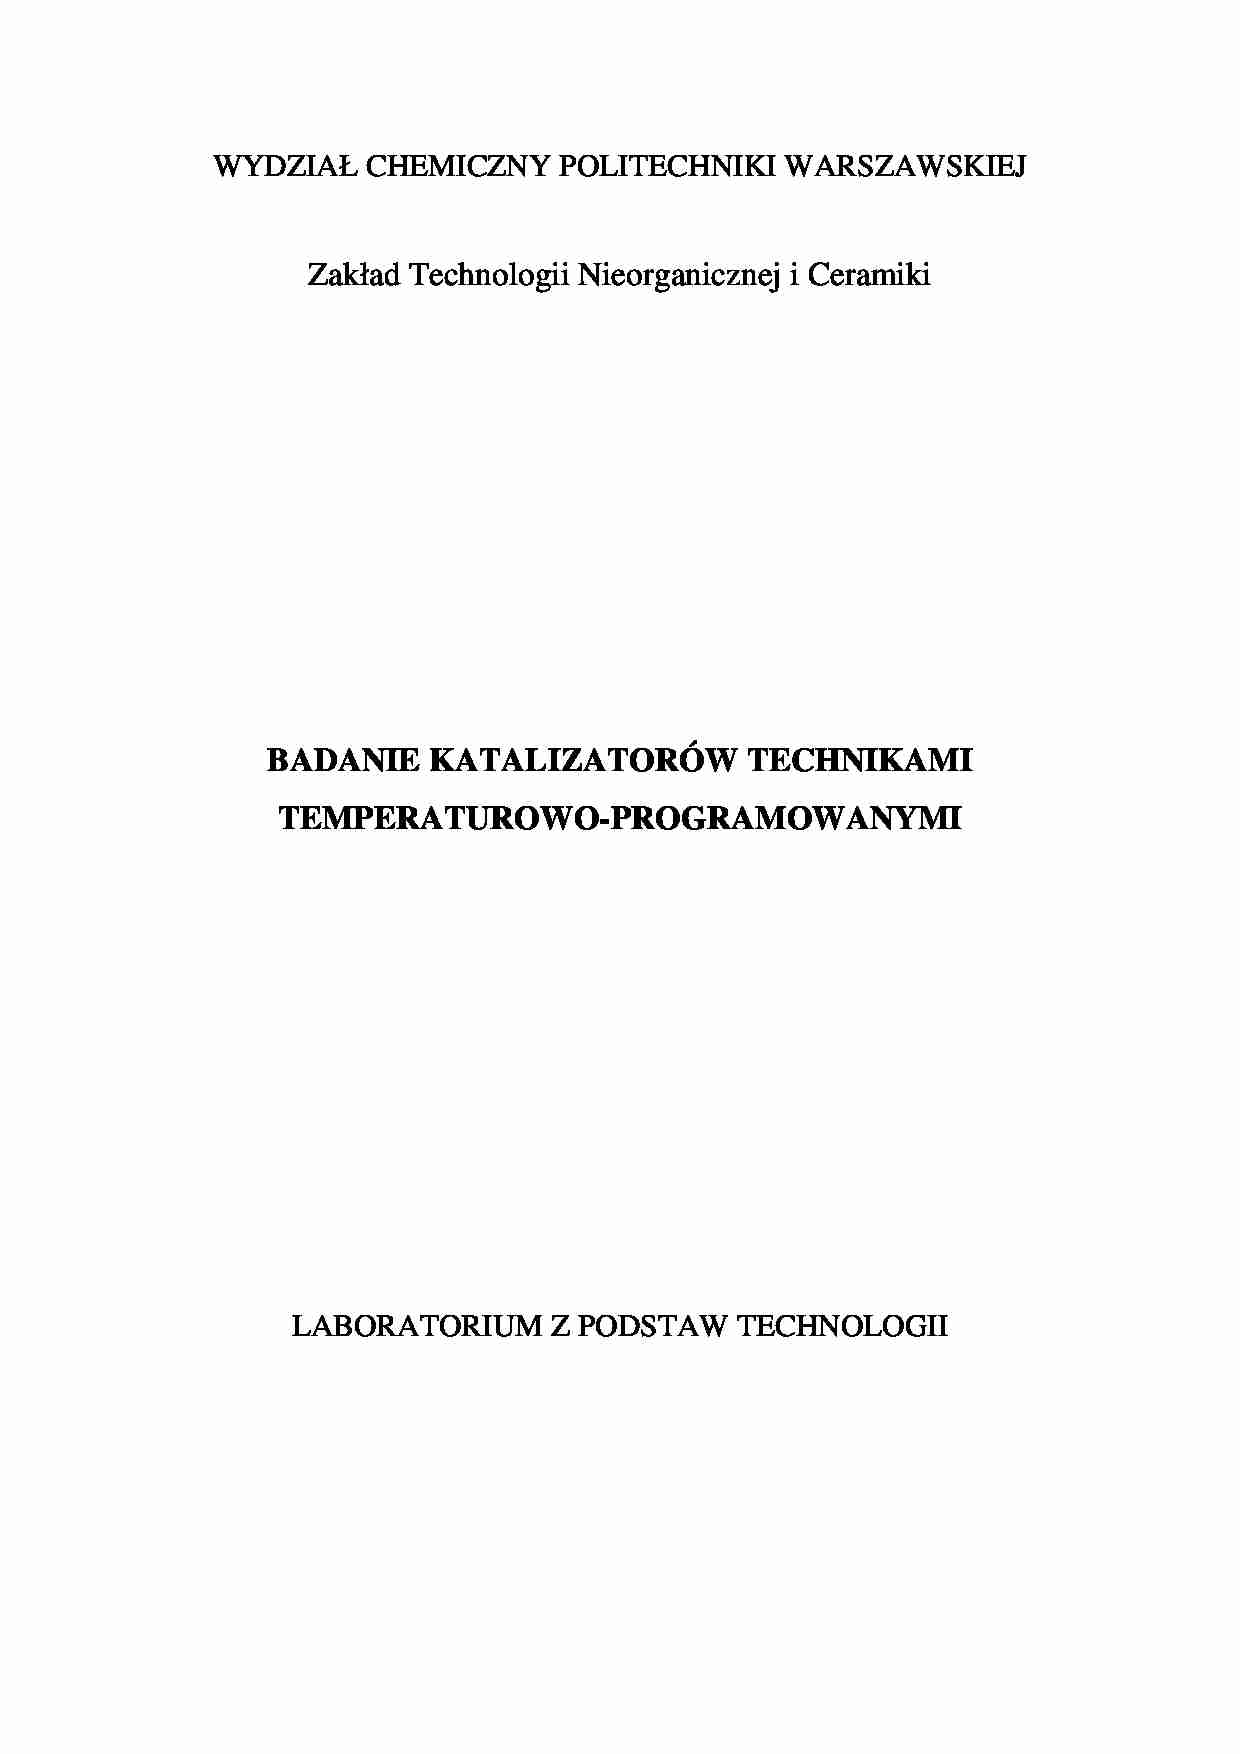 Badanie katalizatorów technikami temperaturowo-programowanymi-opracowanie - strona 1